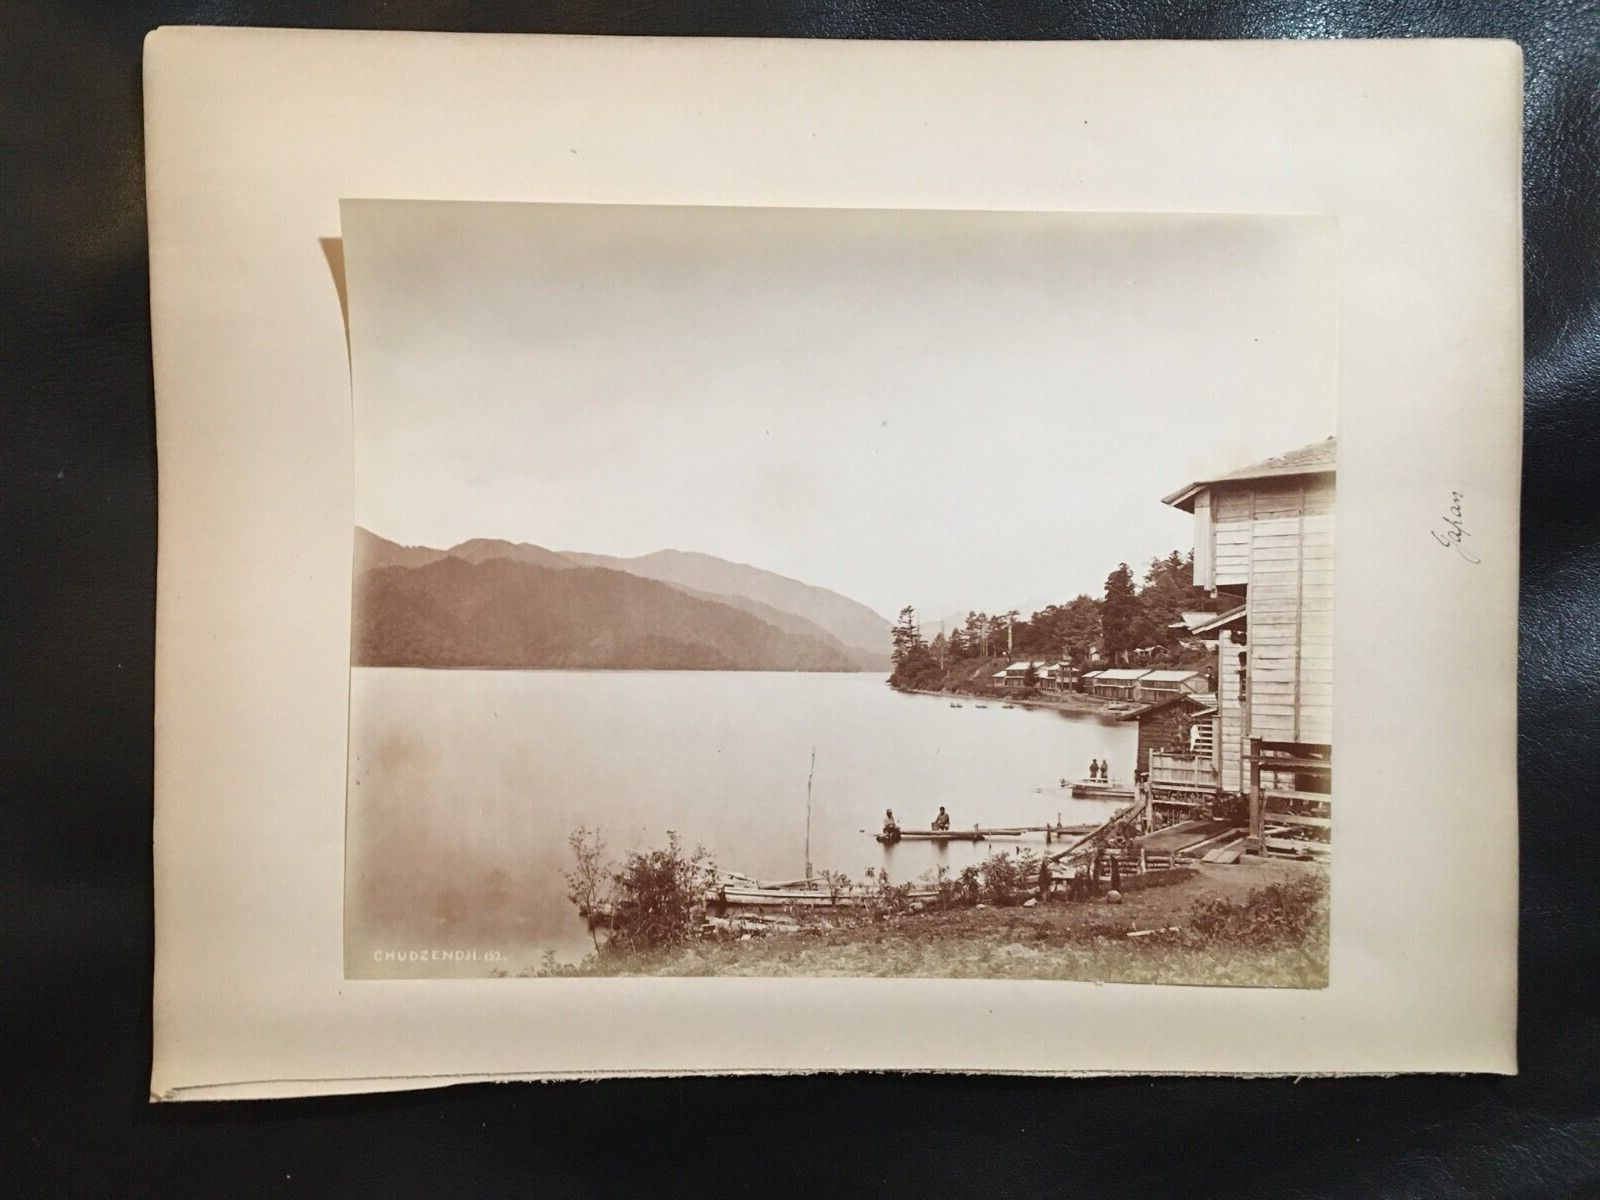 Large Original 1880s Albumen Photo of Japanese Boaters on Lake by Chudzendji